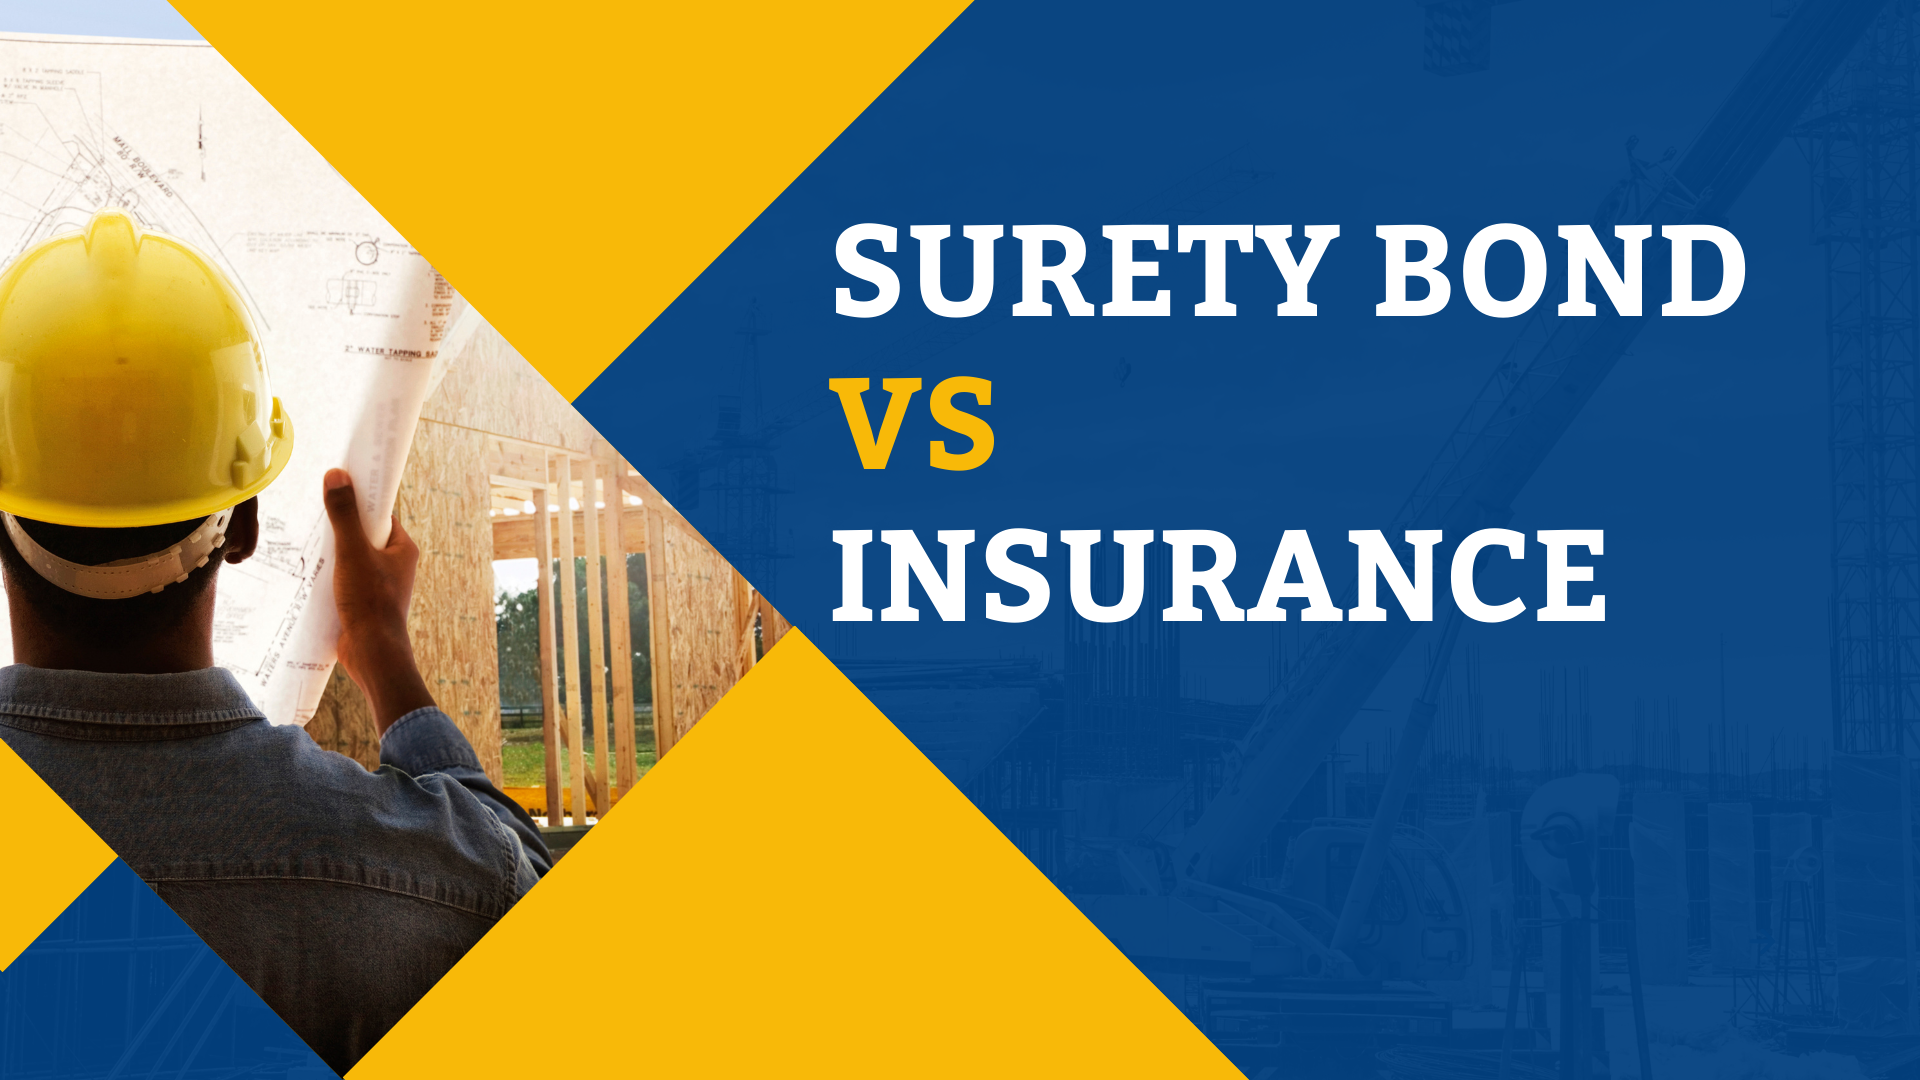 Surety Bond-Surety Bond vs Insurance